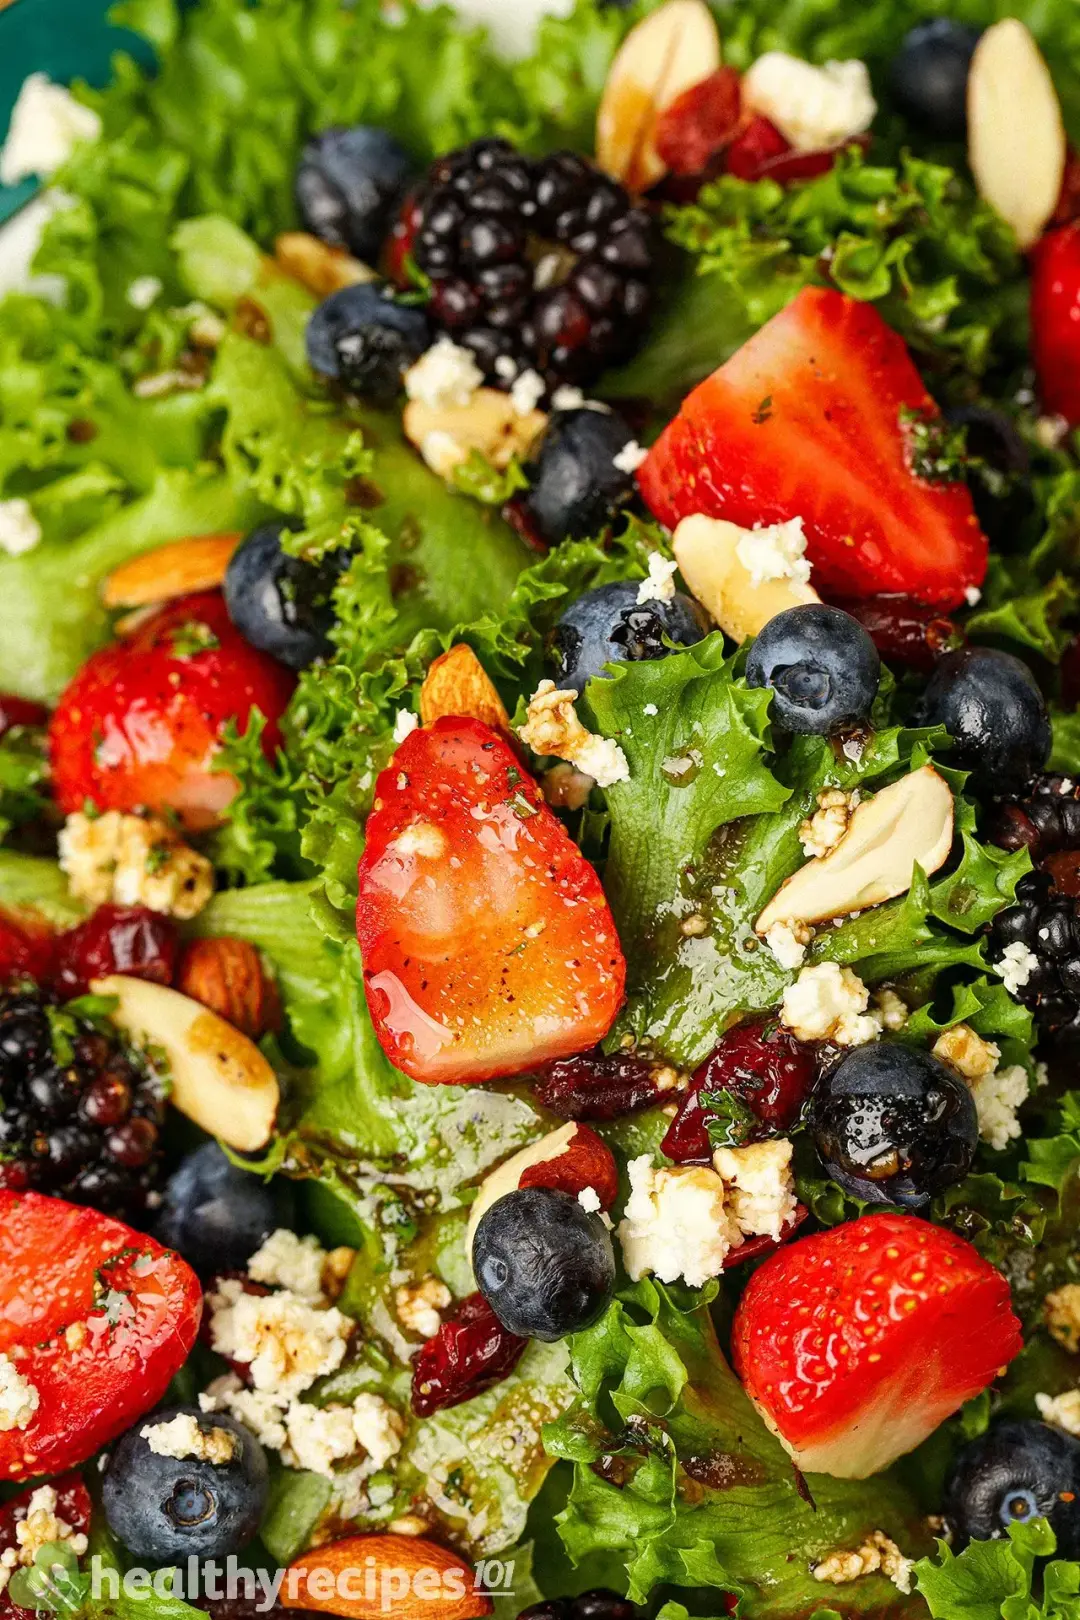 Is Berries Salad Healthy